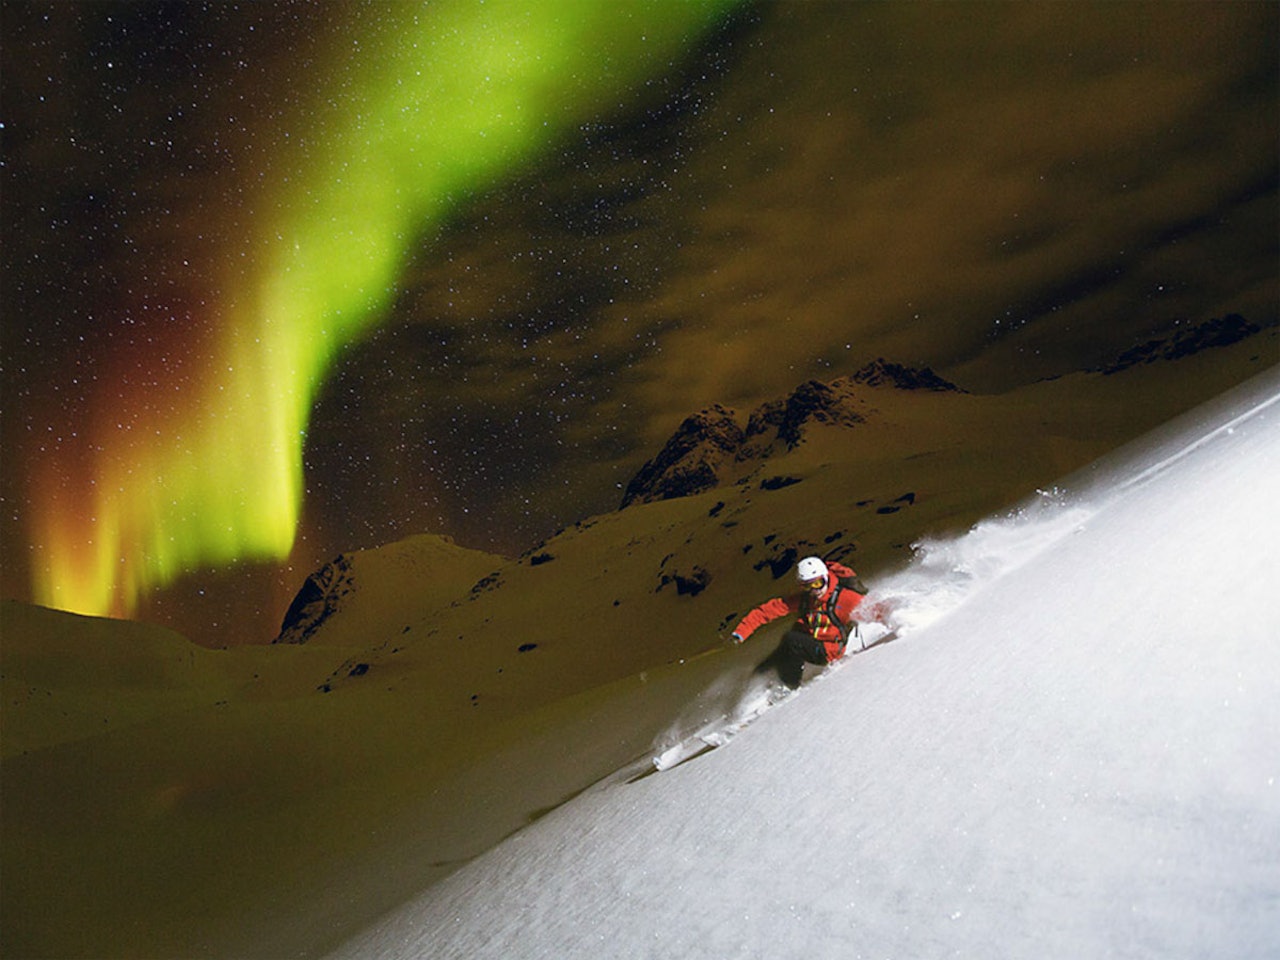 NORDLYS-SPESIAL: Det er ingen tvil om at skikjøring med nordlyset hengende over seg er en opplevelse av de sjeldne. Foto: Fredrik Schenholm